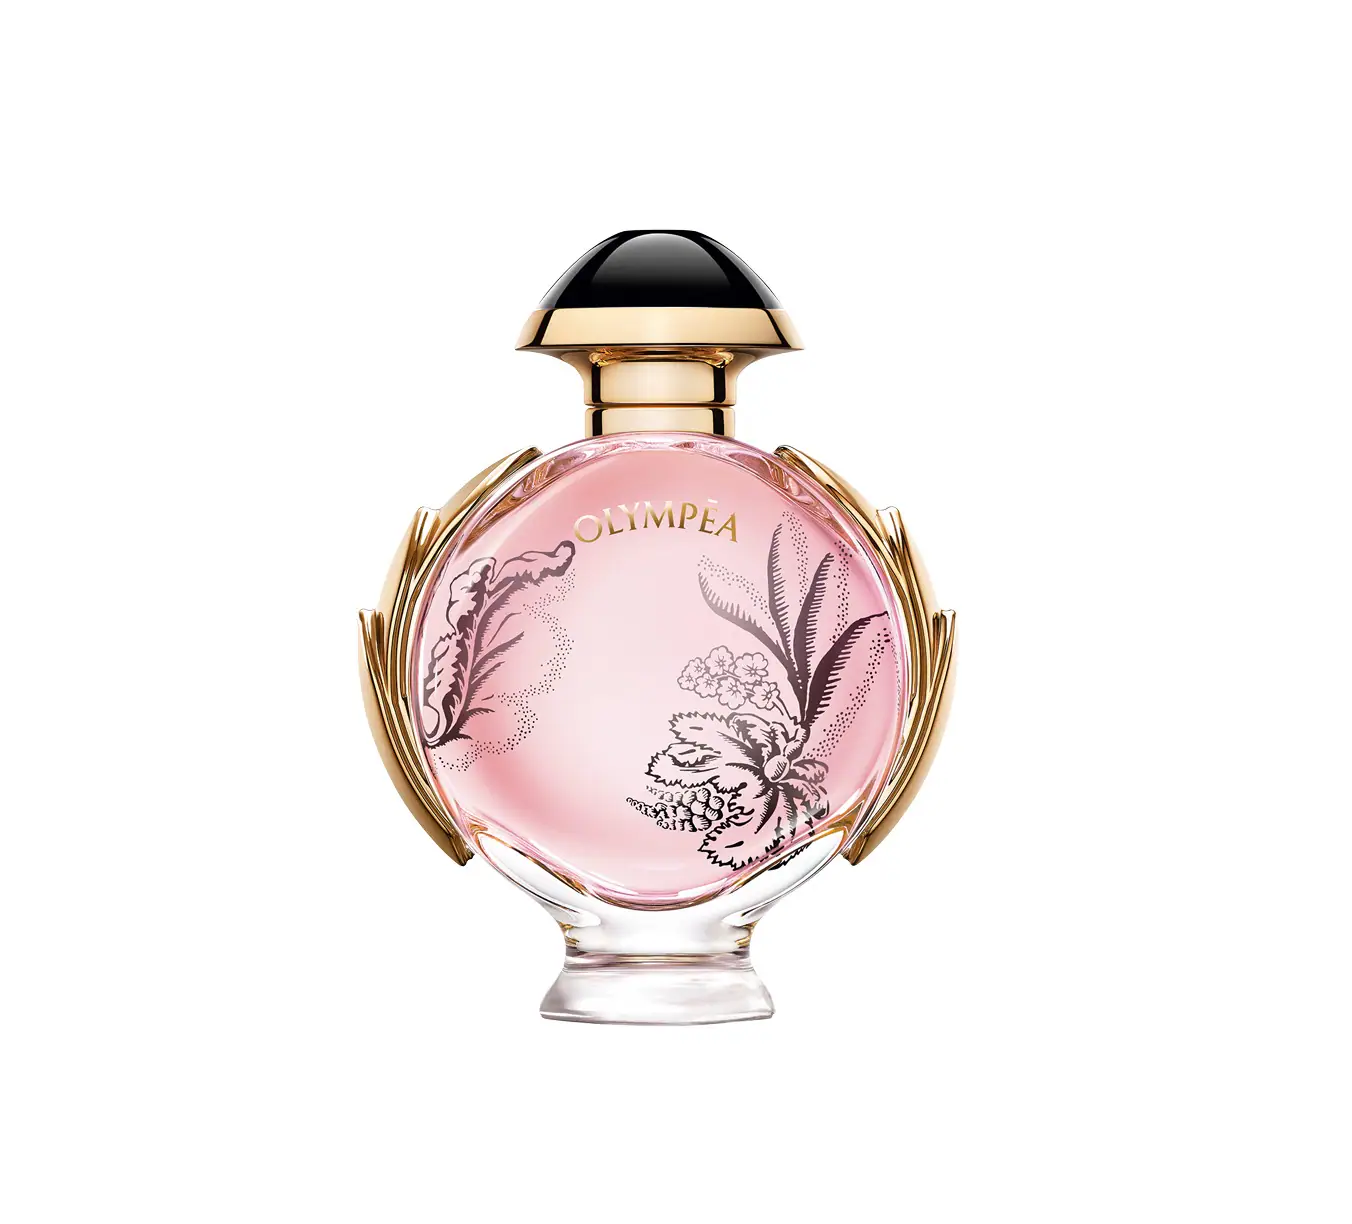 Fotos: Perfumes buenos, bonitos para regalar (o regalarte) en San Mujer Hoy